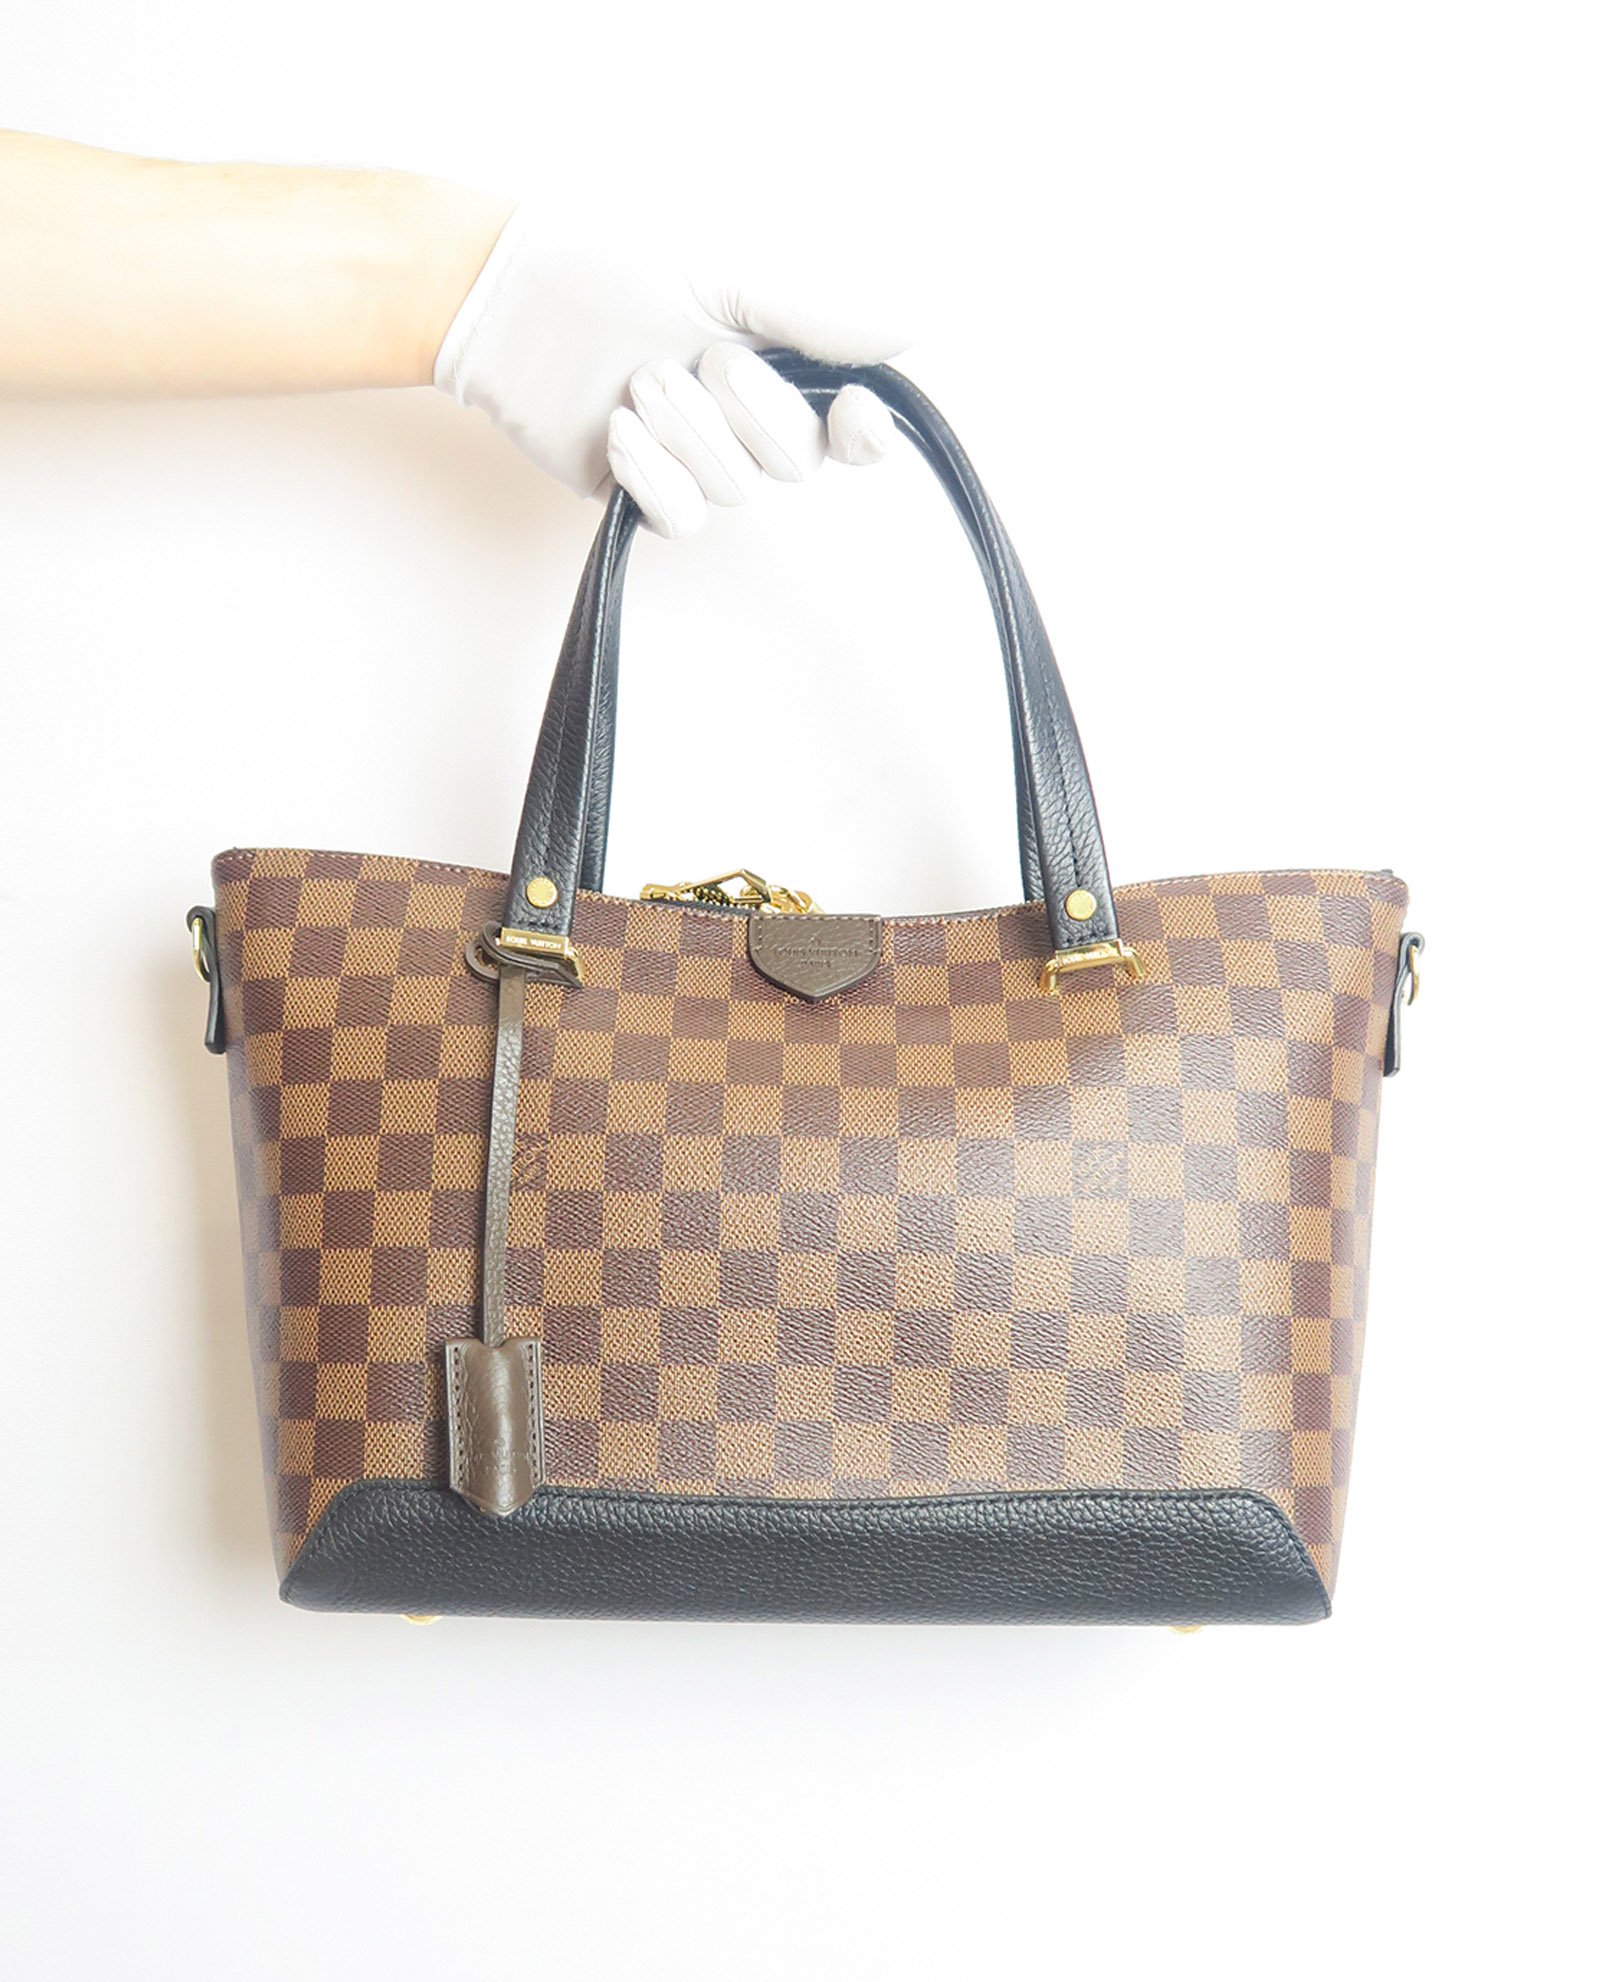 Louis Vuitton Hyde Park Damier Ebene Shoulder Bag in Mint Condition